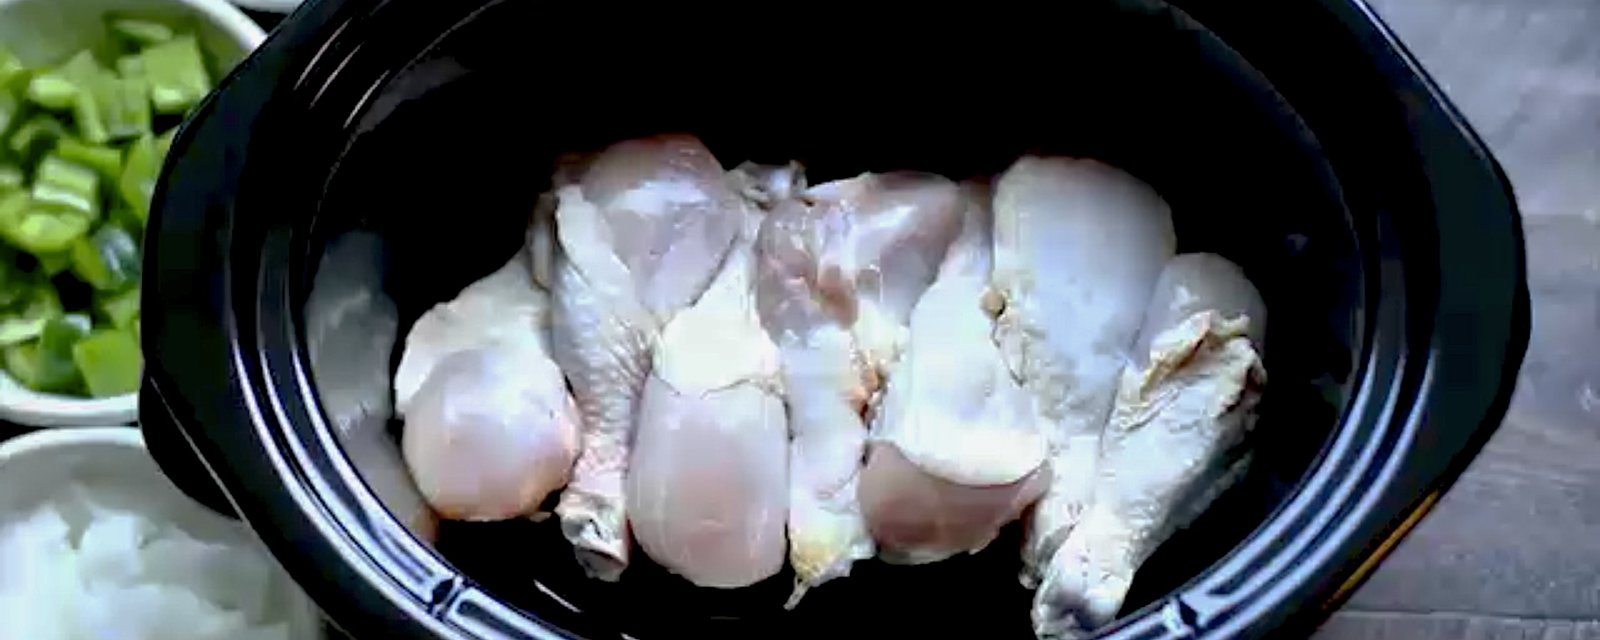 Regardez comment de simples pilons de poulet se transforment en merveilleux souper...